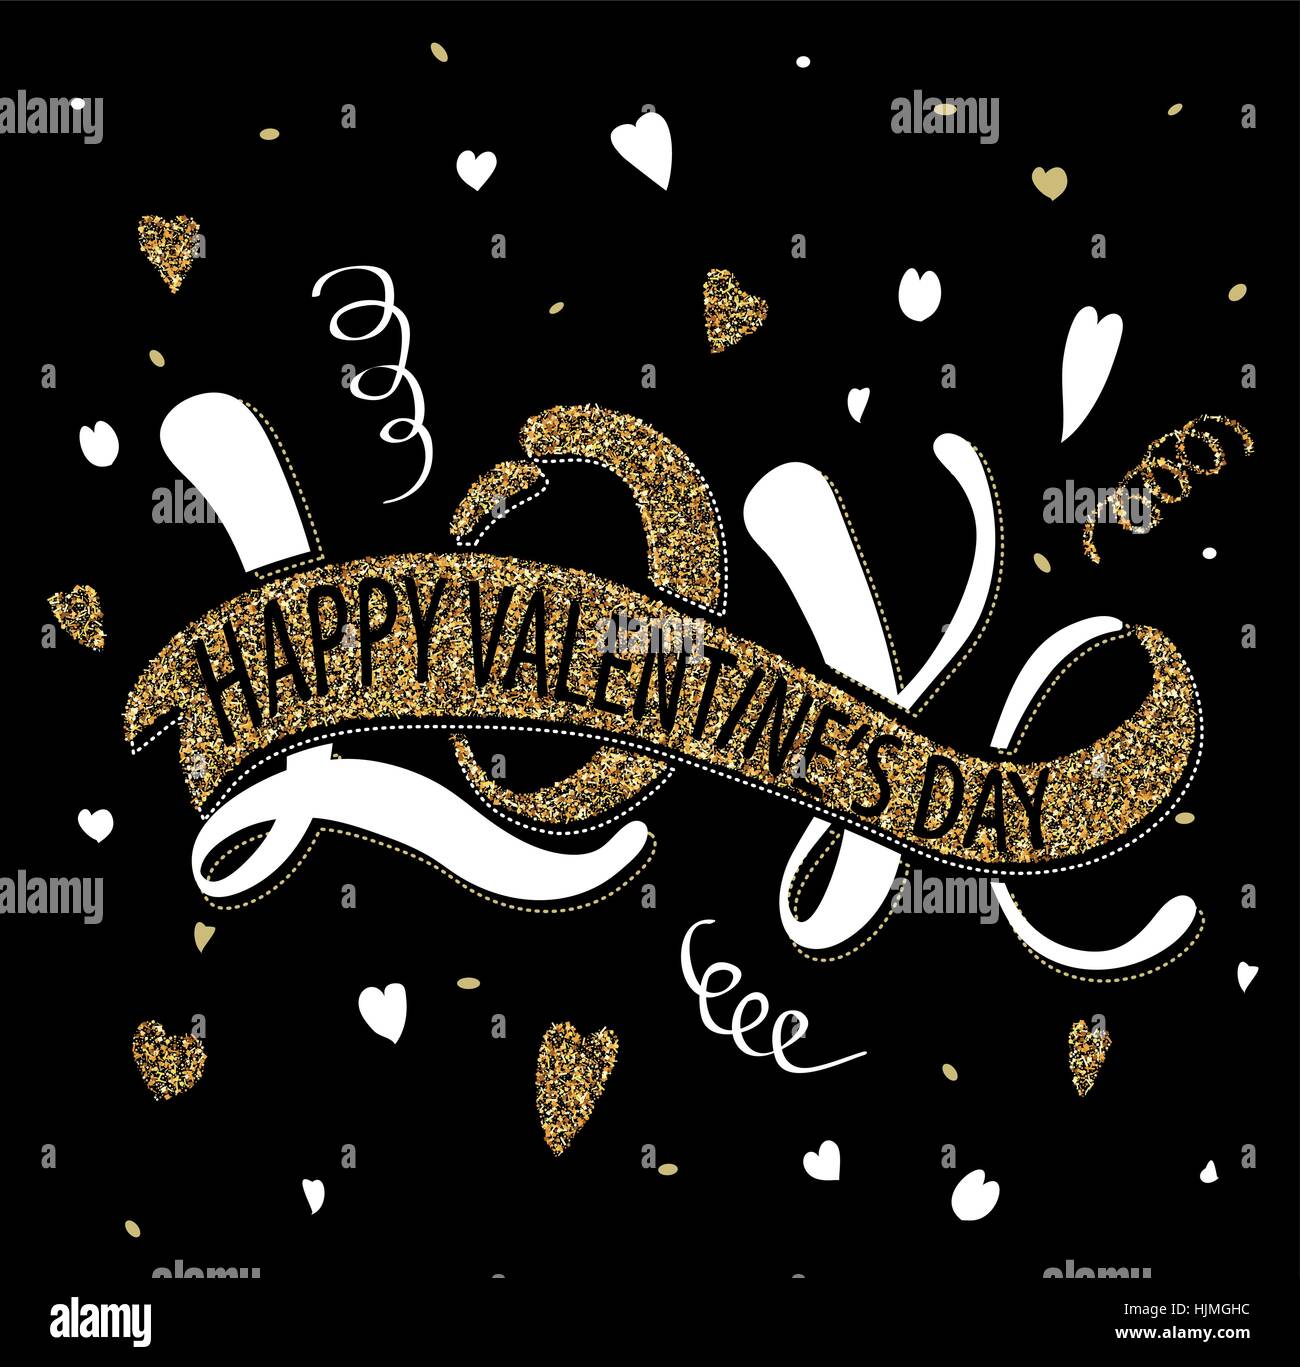 Darstellung der Liebe - Valentinstag, romantisches handschriftliche Inschrift für Poster, Valentinstag-Grußkarte Stock Vektor